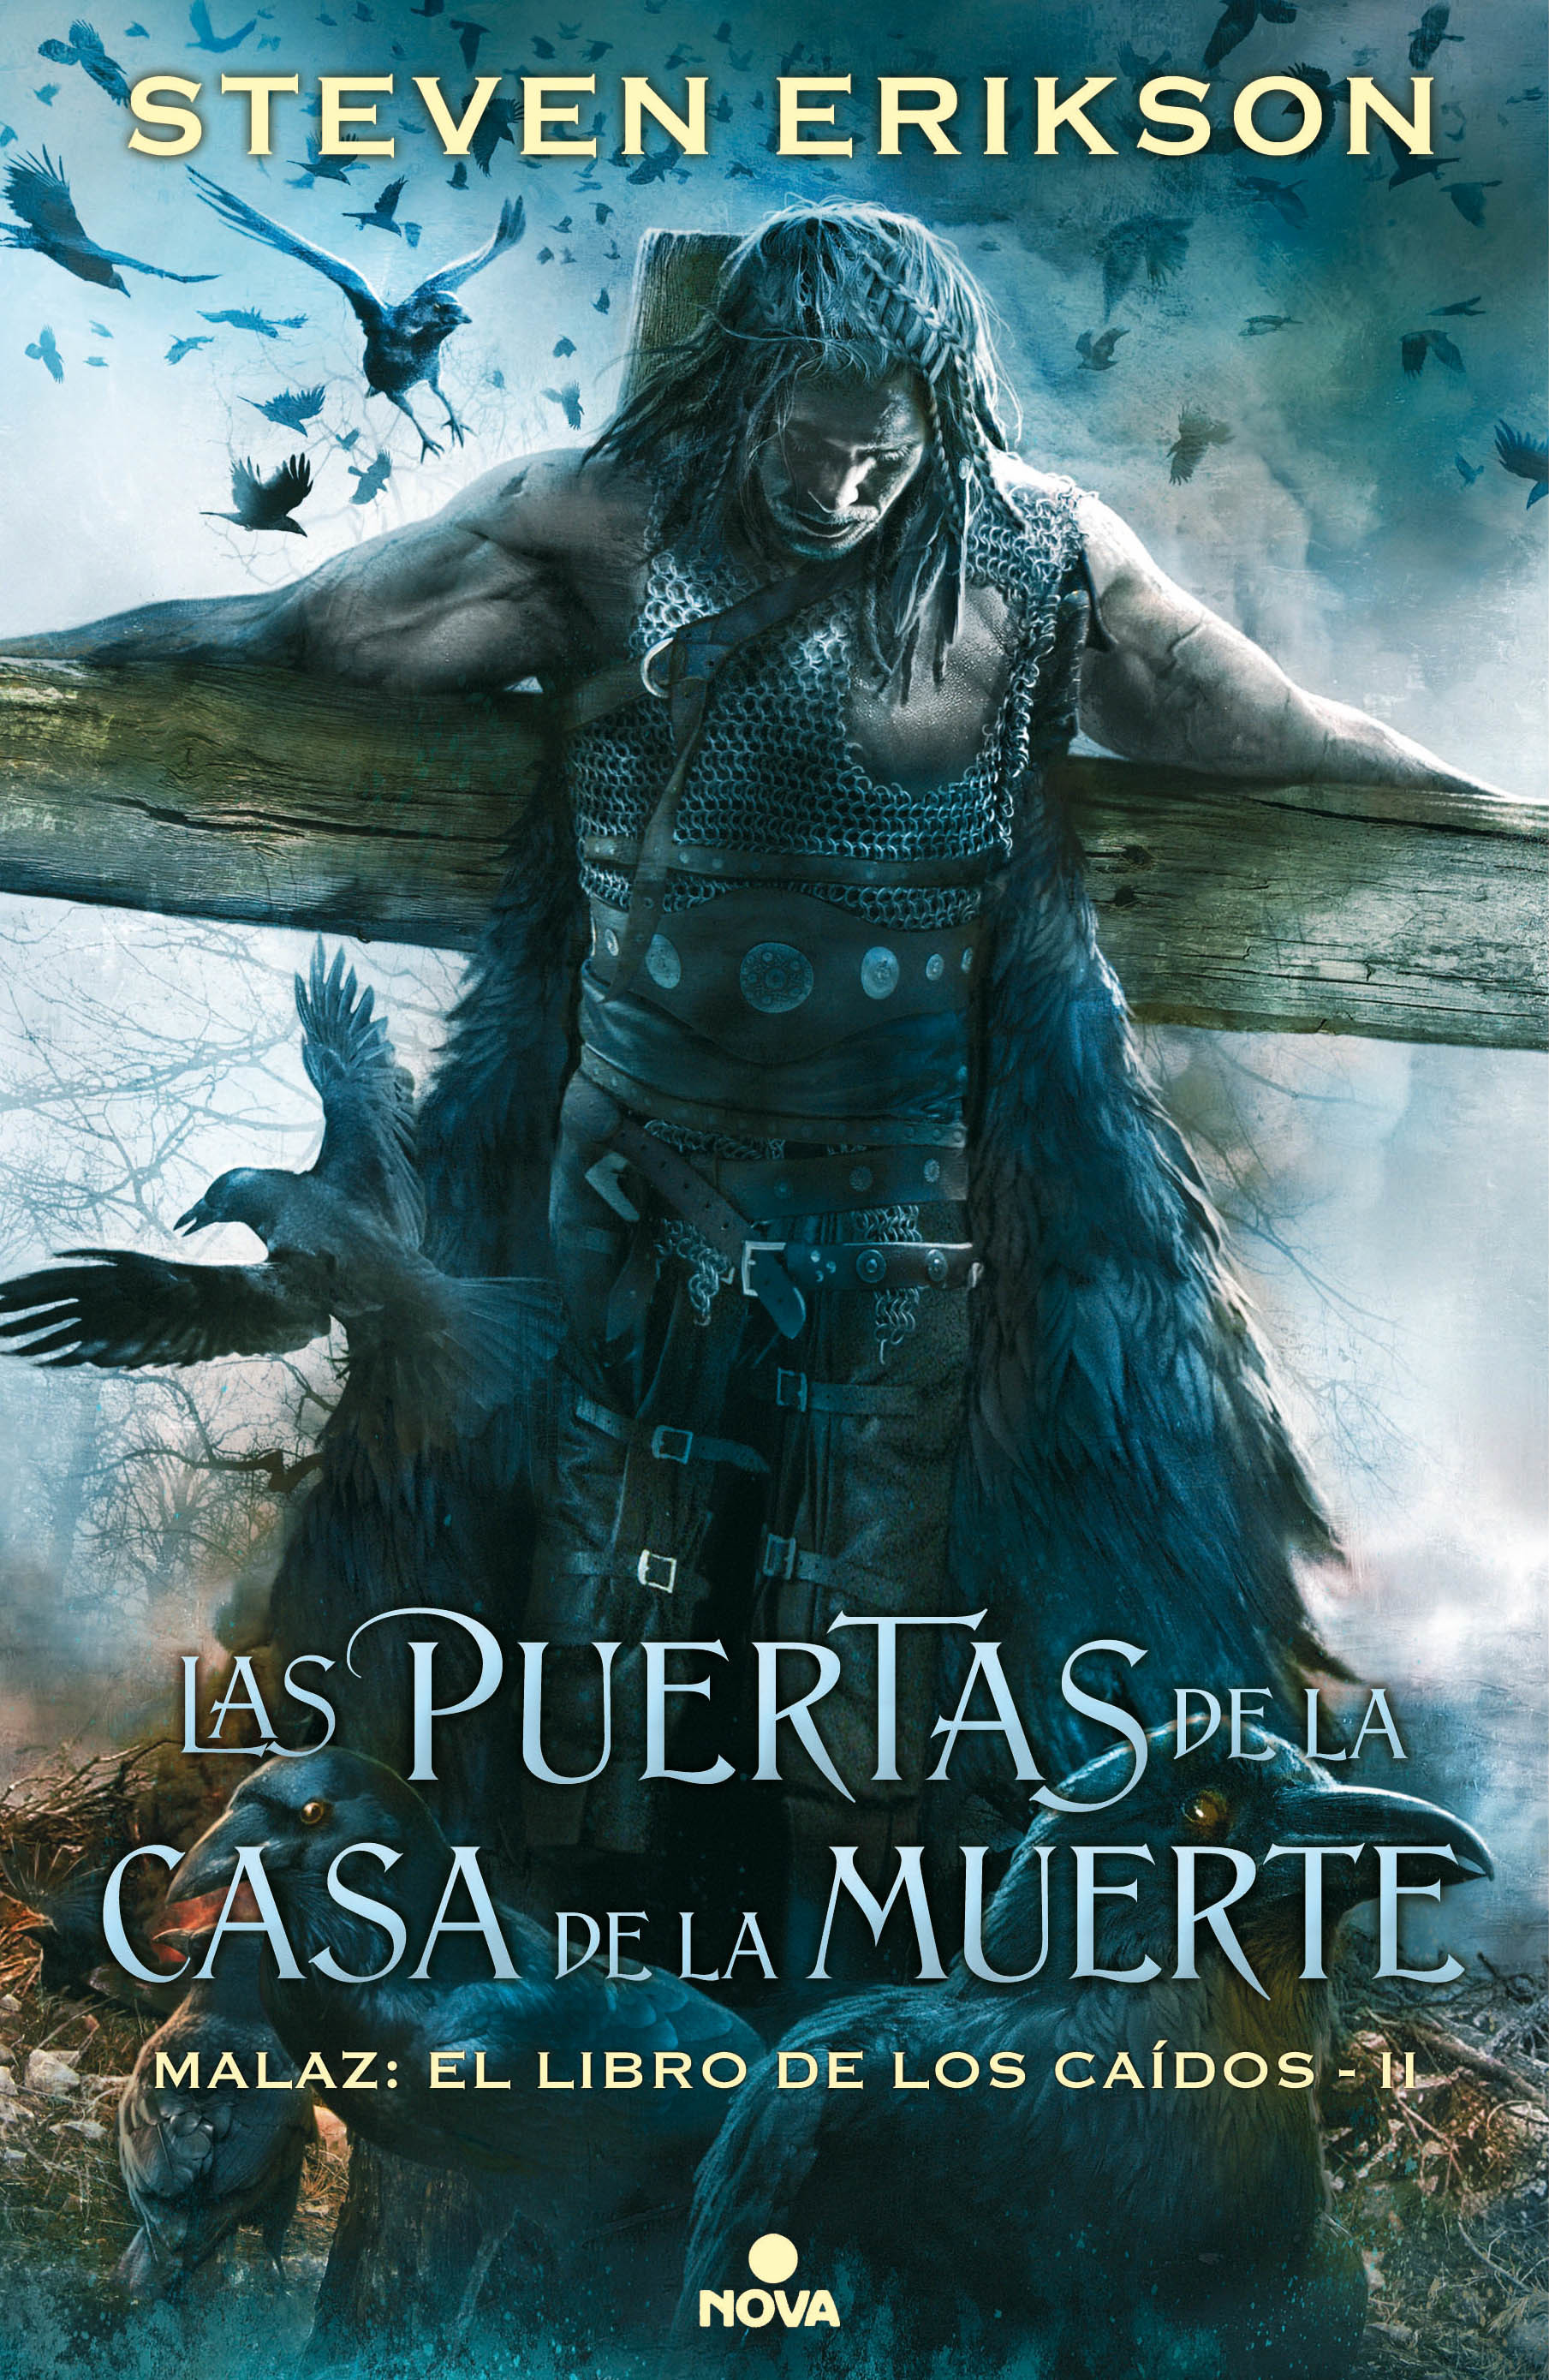 Steven Erikson: Las Puertas de la Casa de la Muerte (Spanish language, 2017, Ediciones B)